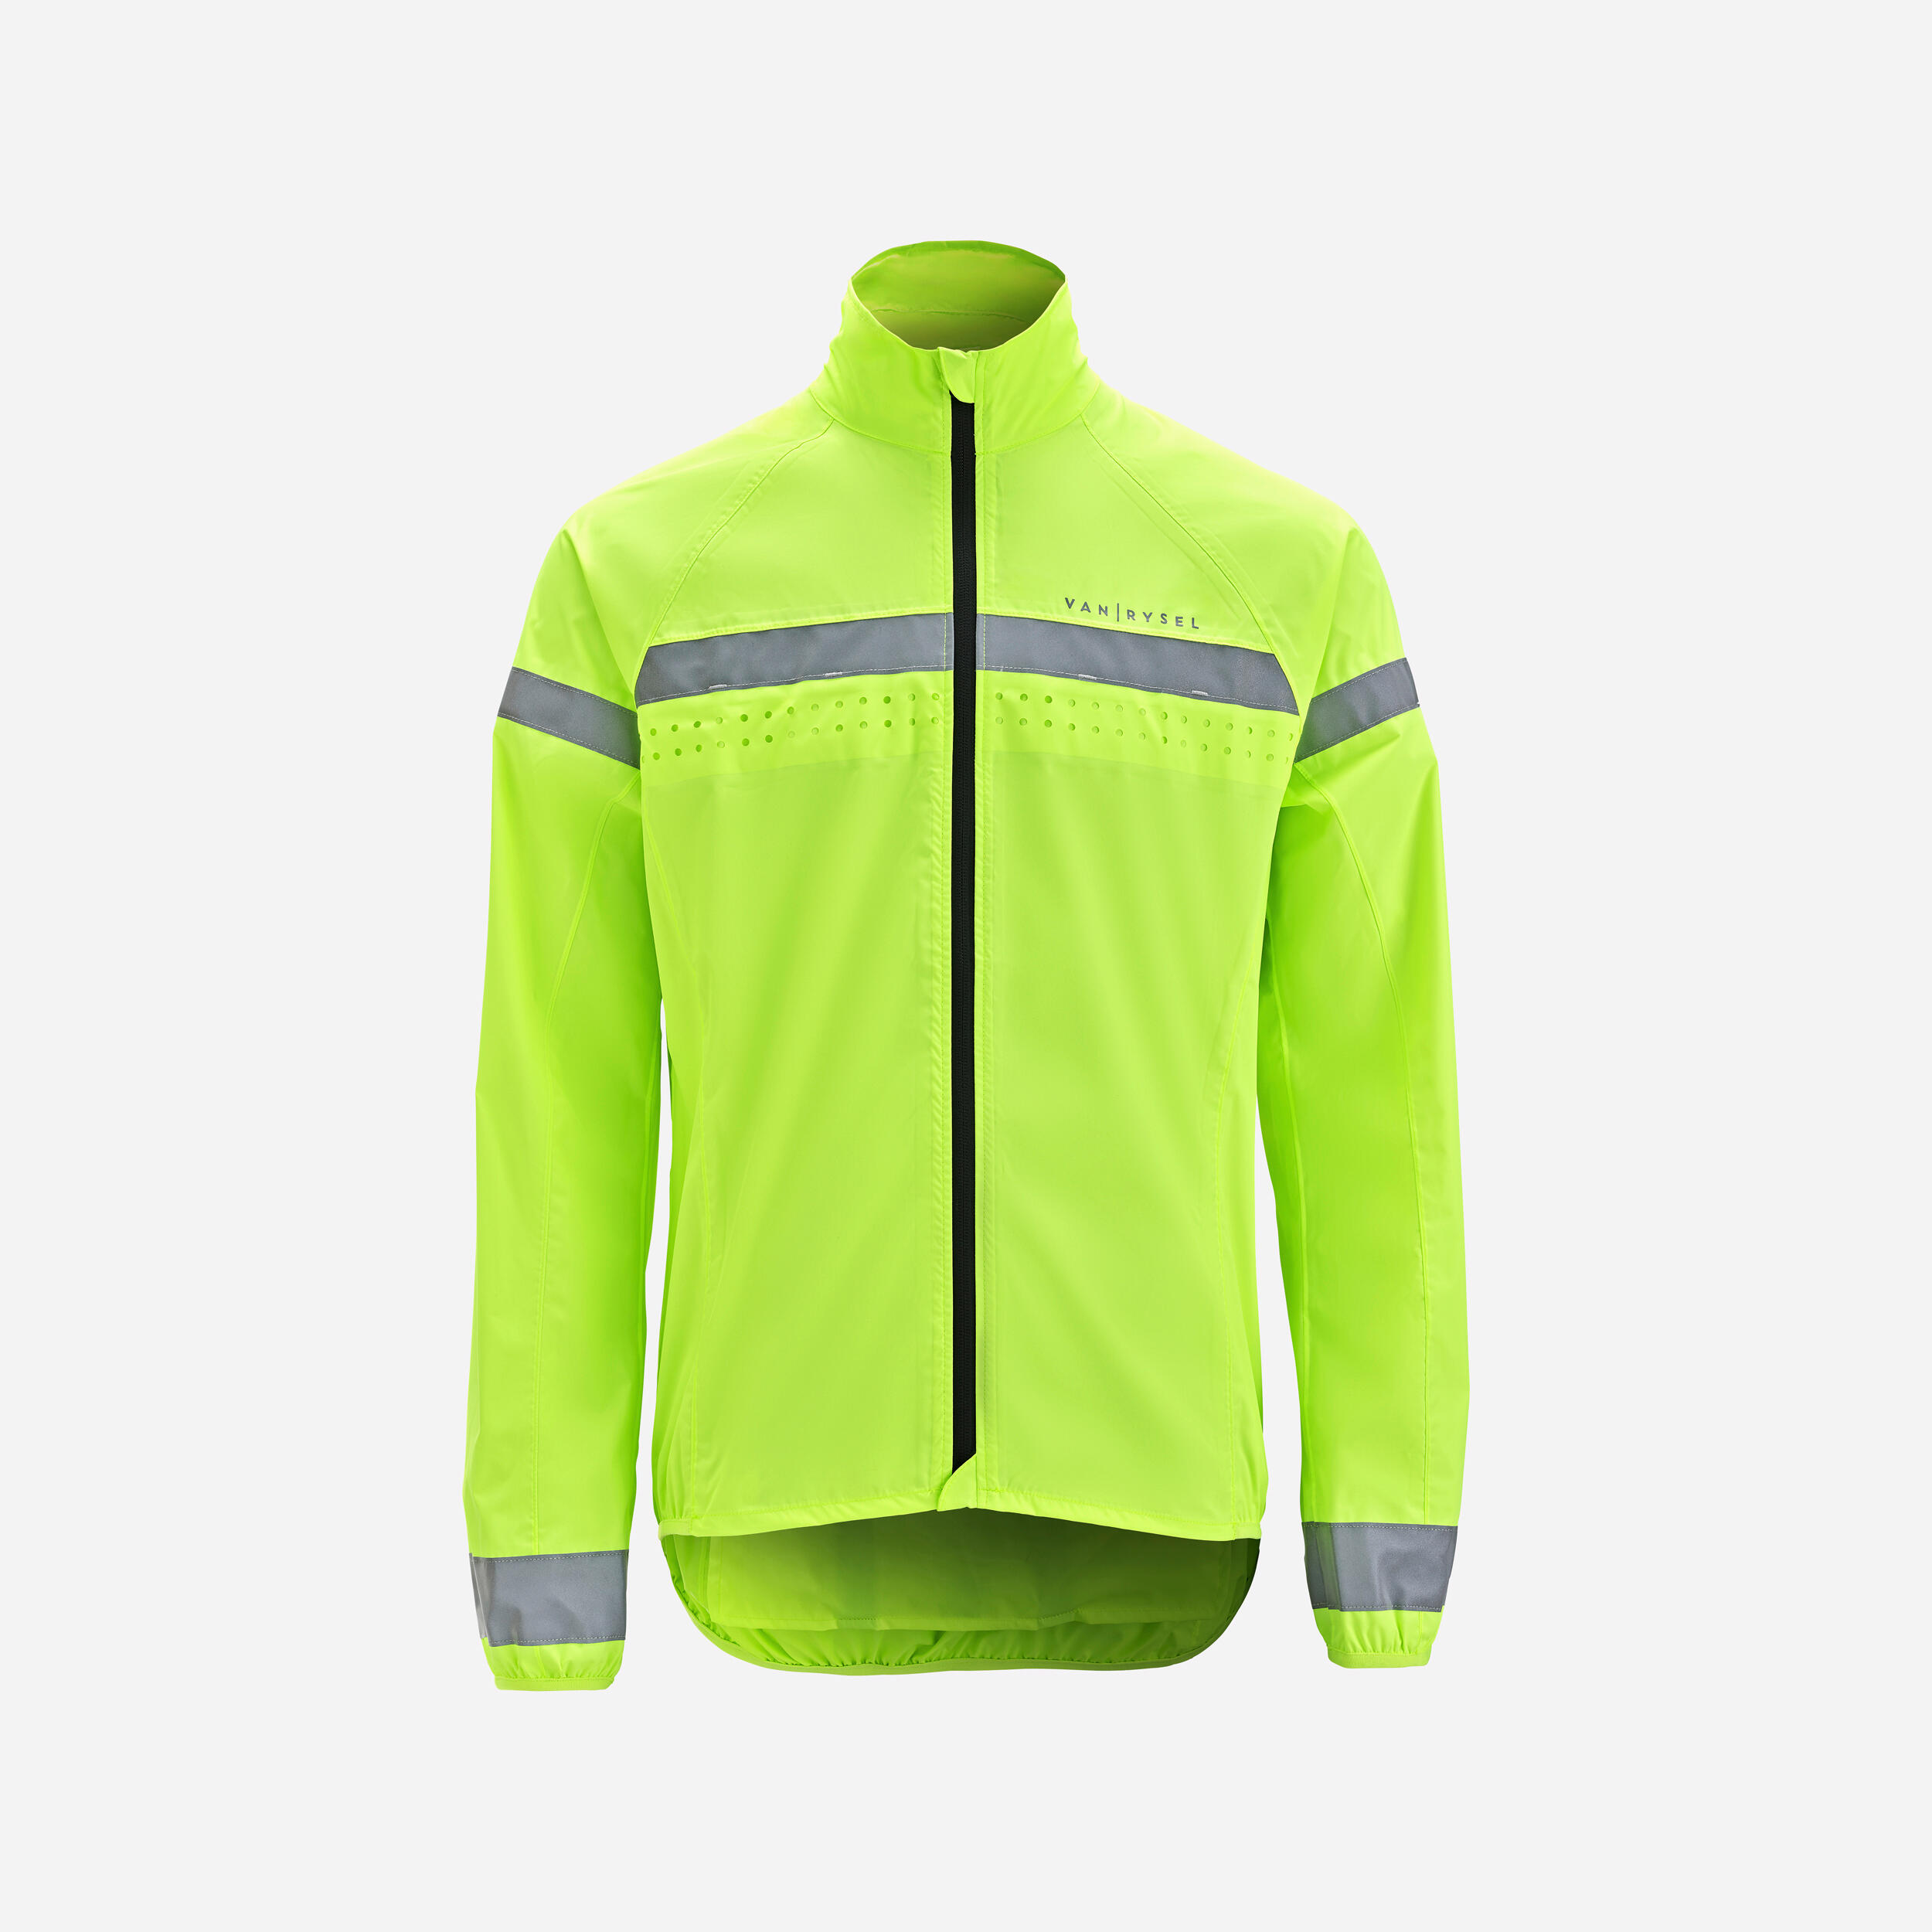 Ultralight Cycling Jacket - Men - black - Van rysel - Decathlon